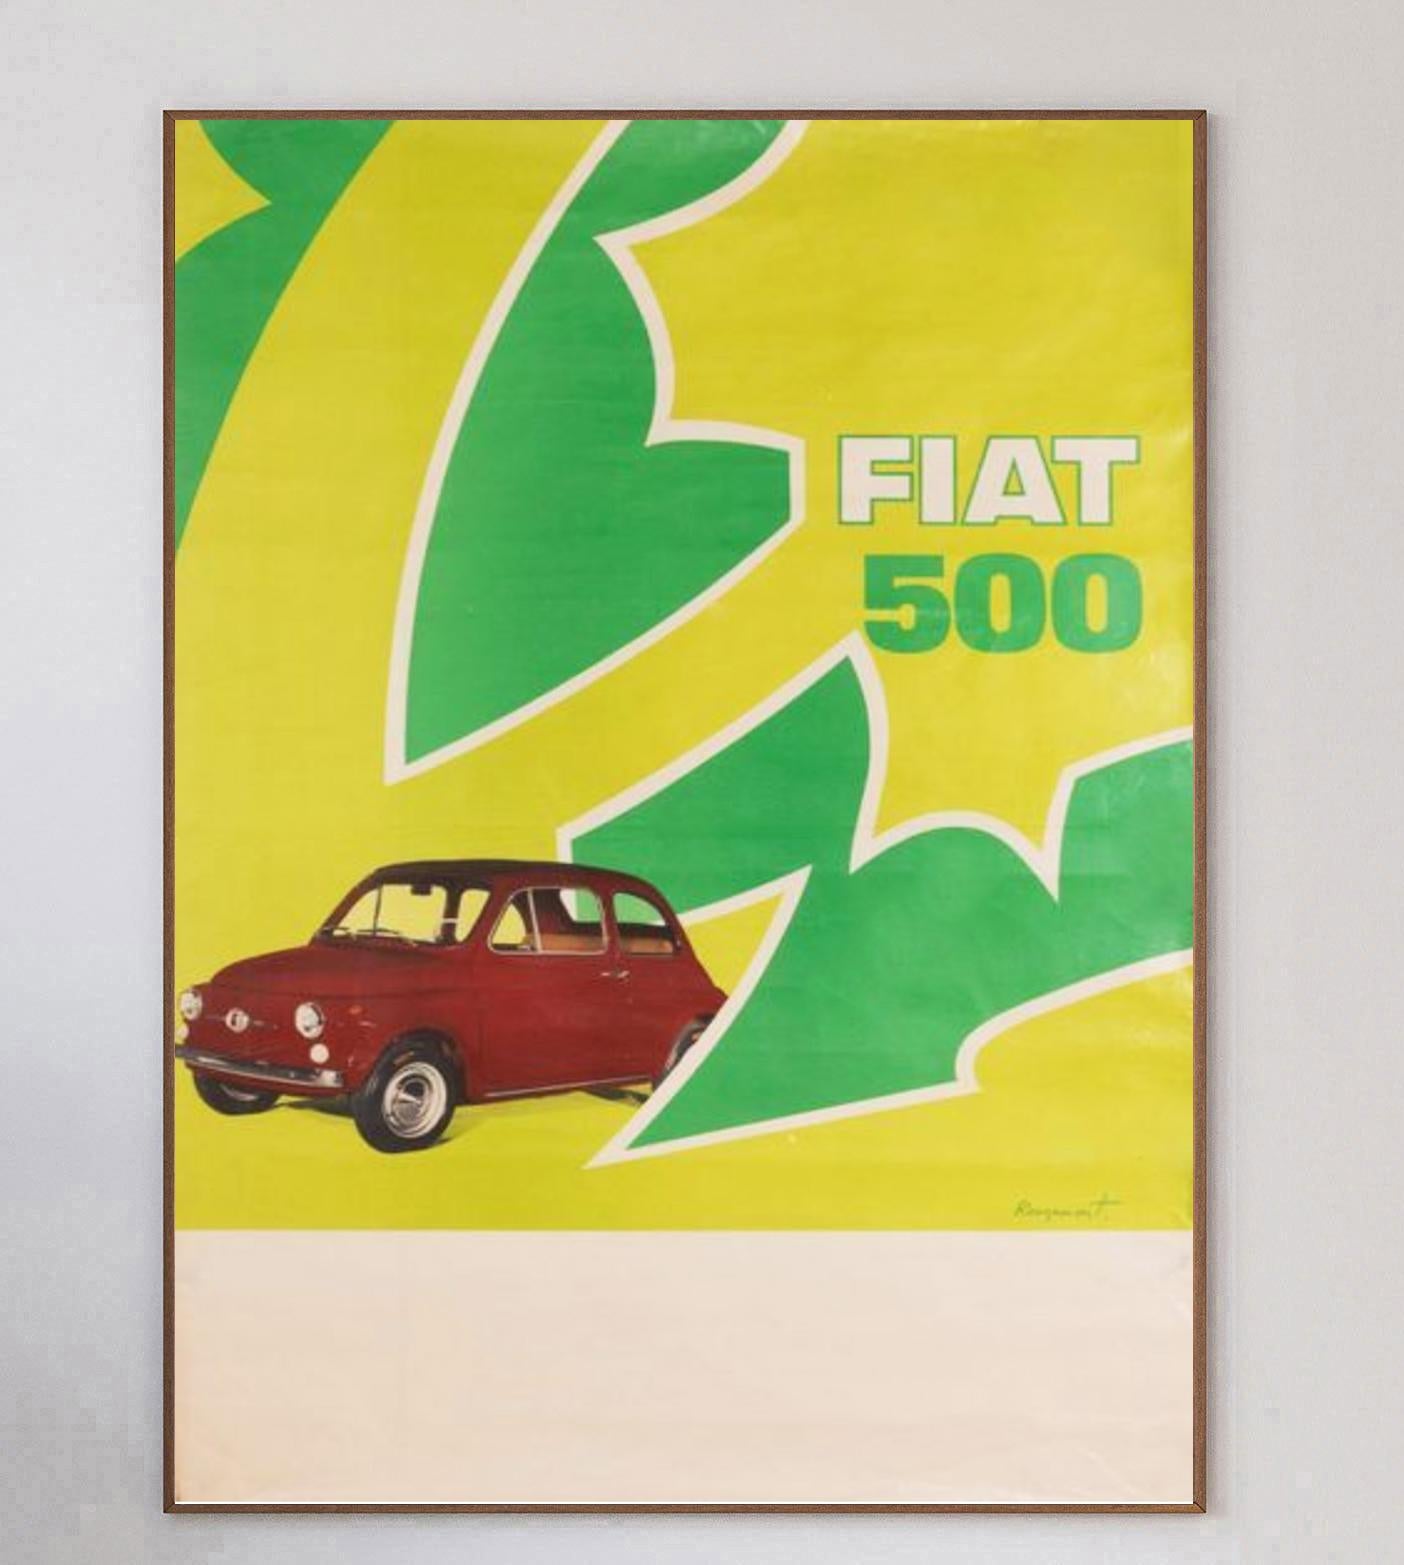 Impresionante cartel litográfico de 1967 anunciando el coche Fiat 500. Diseñado por Guy de Rougemont, este brillante diseño de los años 60 tiene un gran colorido vibrante y es extremadamente raro.

Uno de los modelos de automóvil más emblemáticos